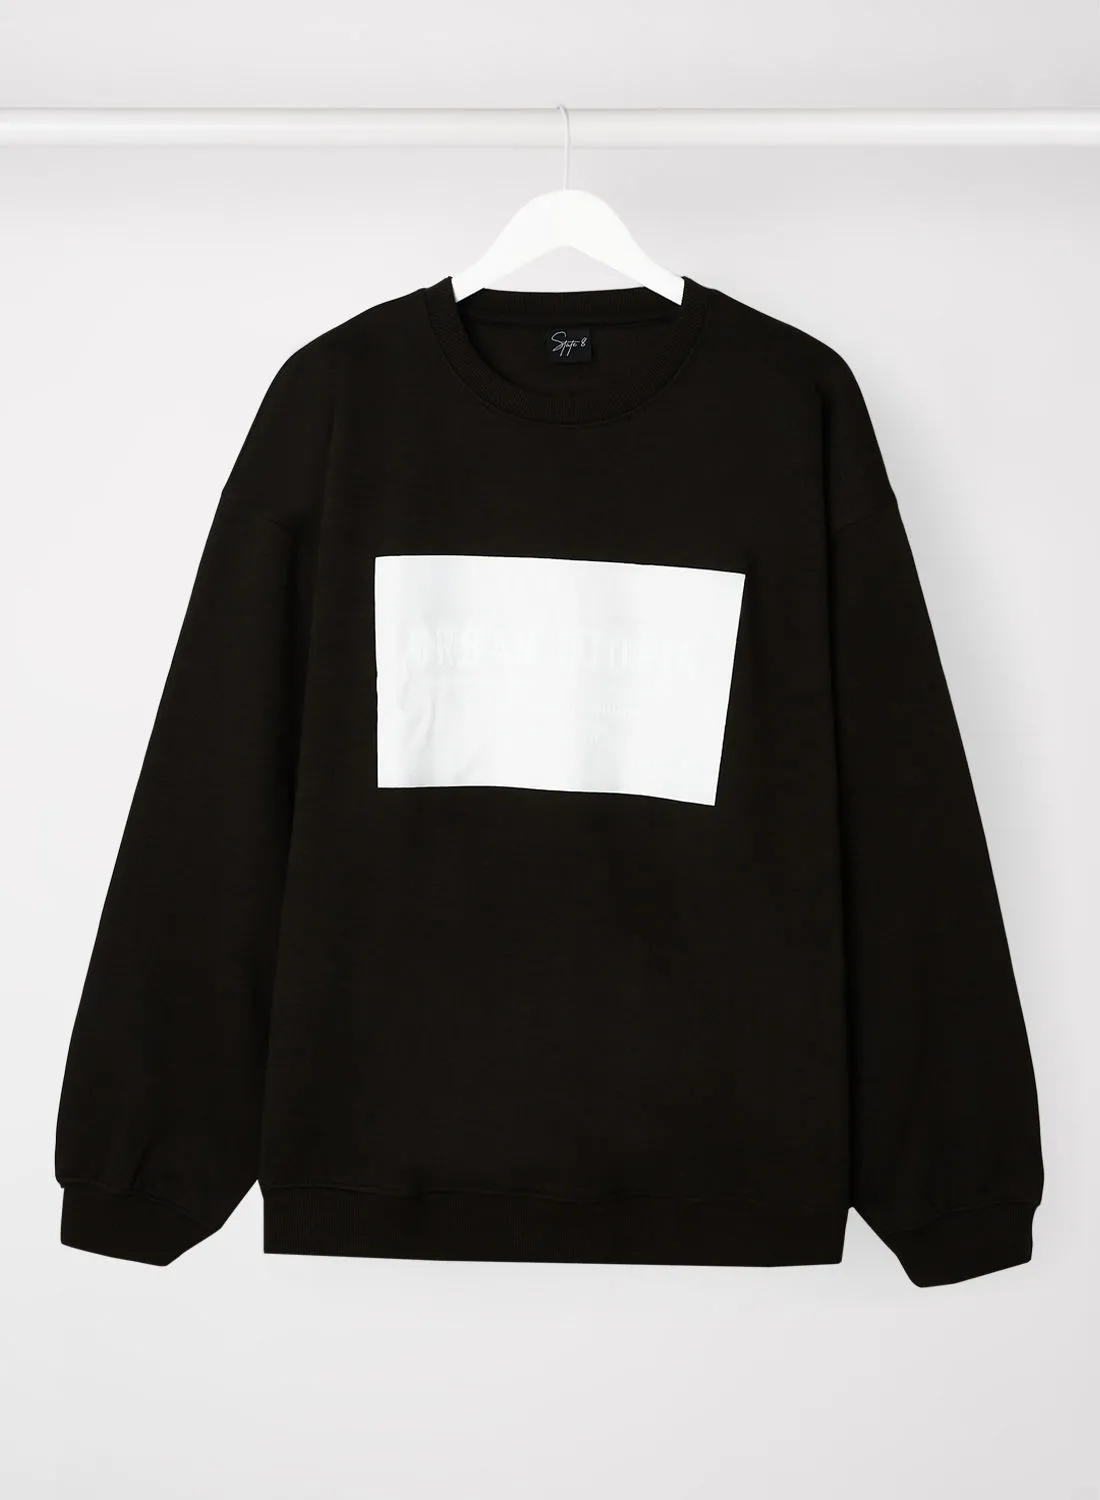 STATE 8 Printed Sweatshirt Black